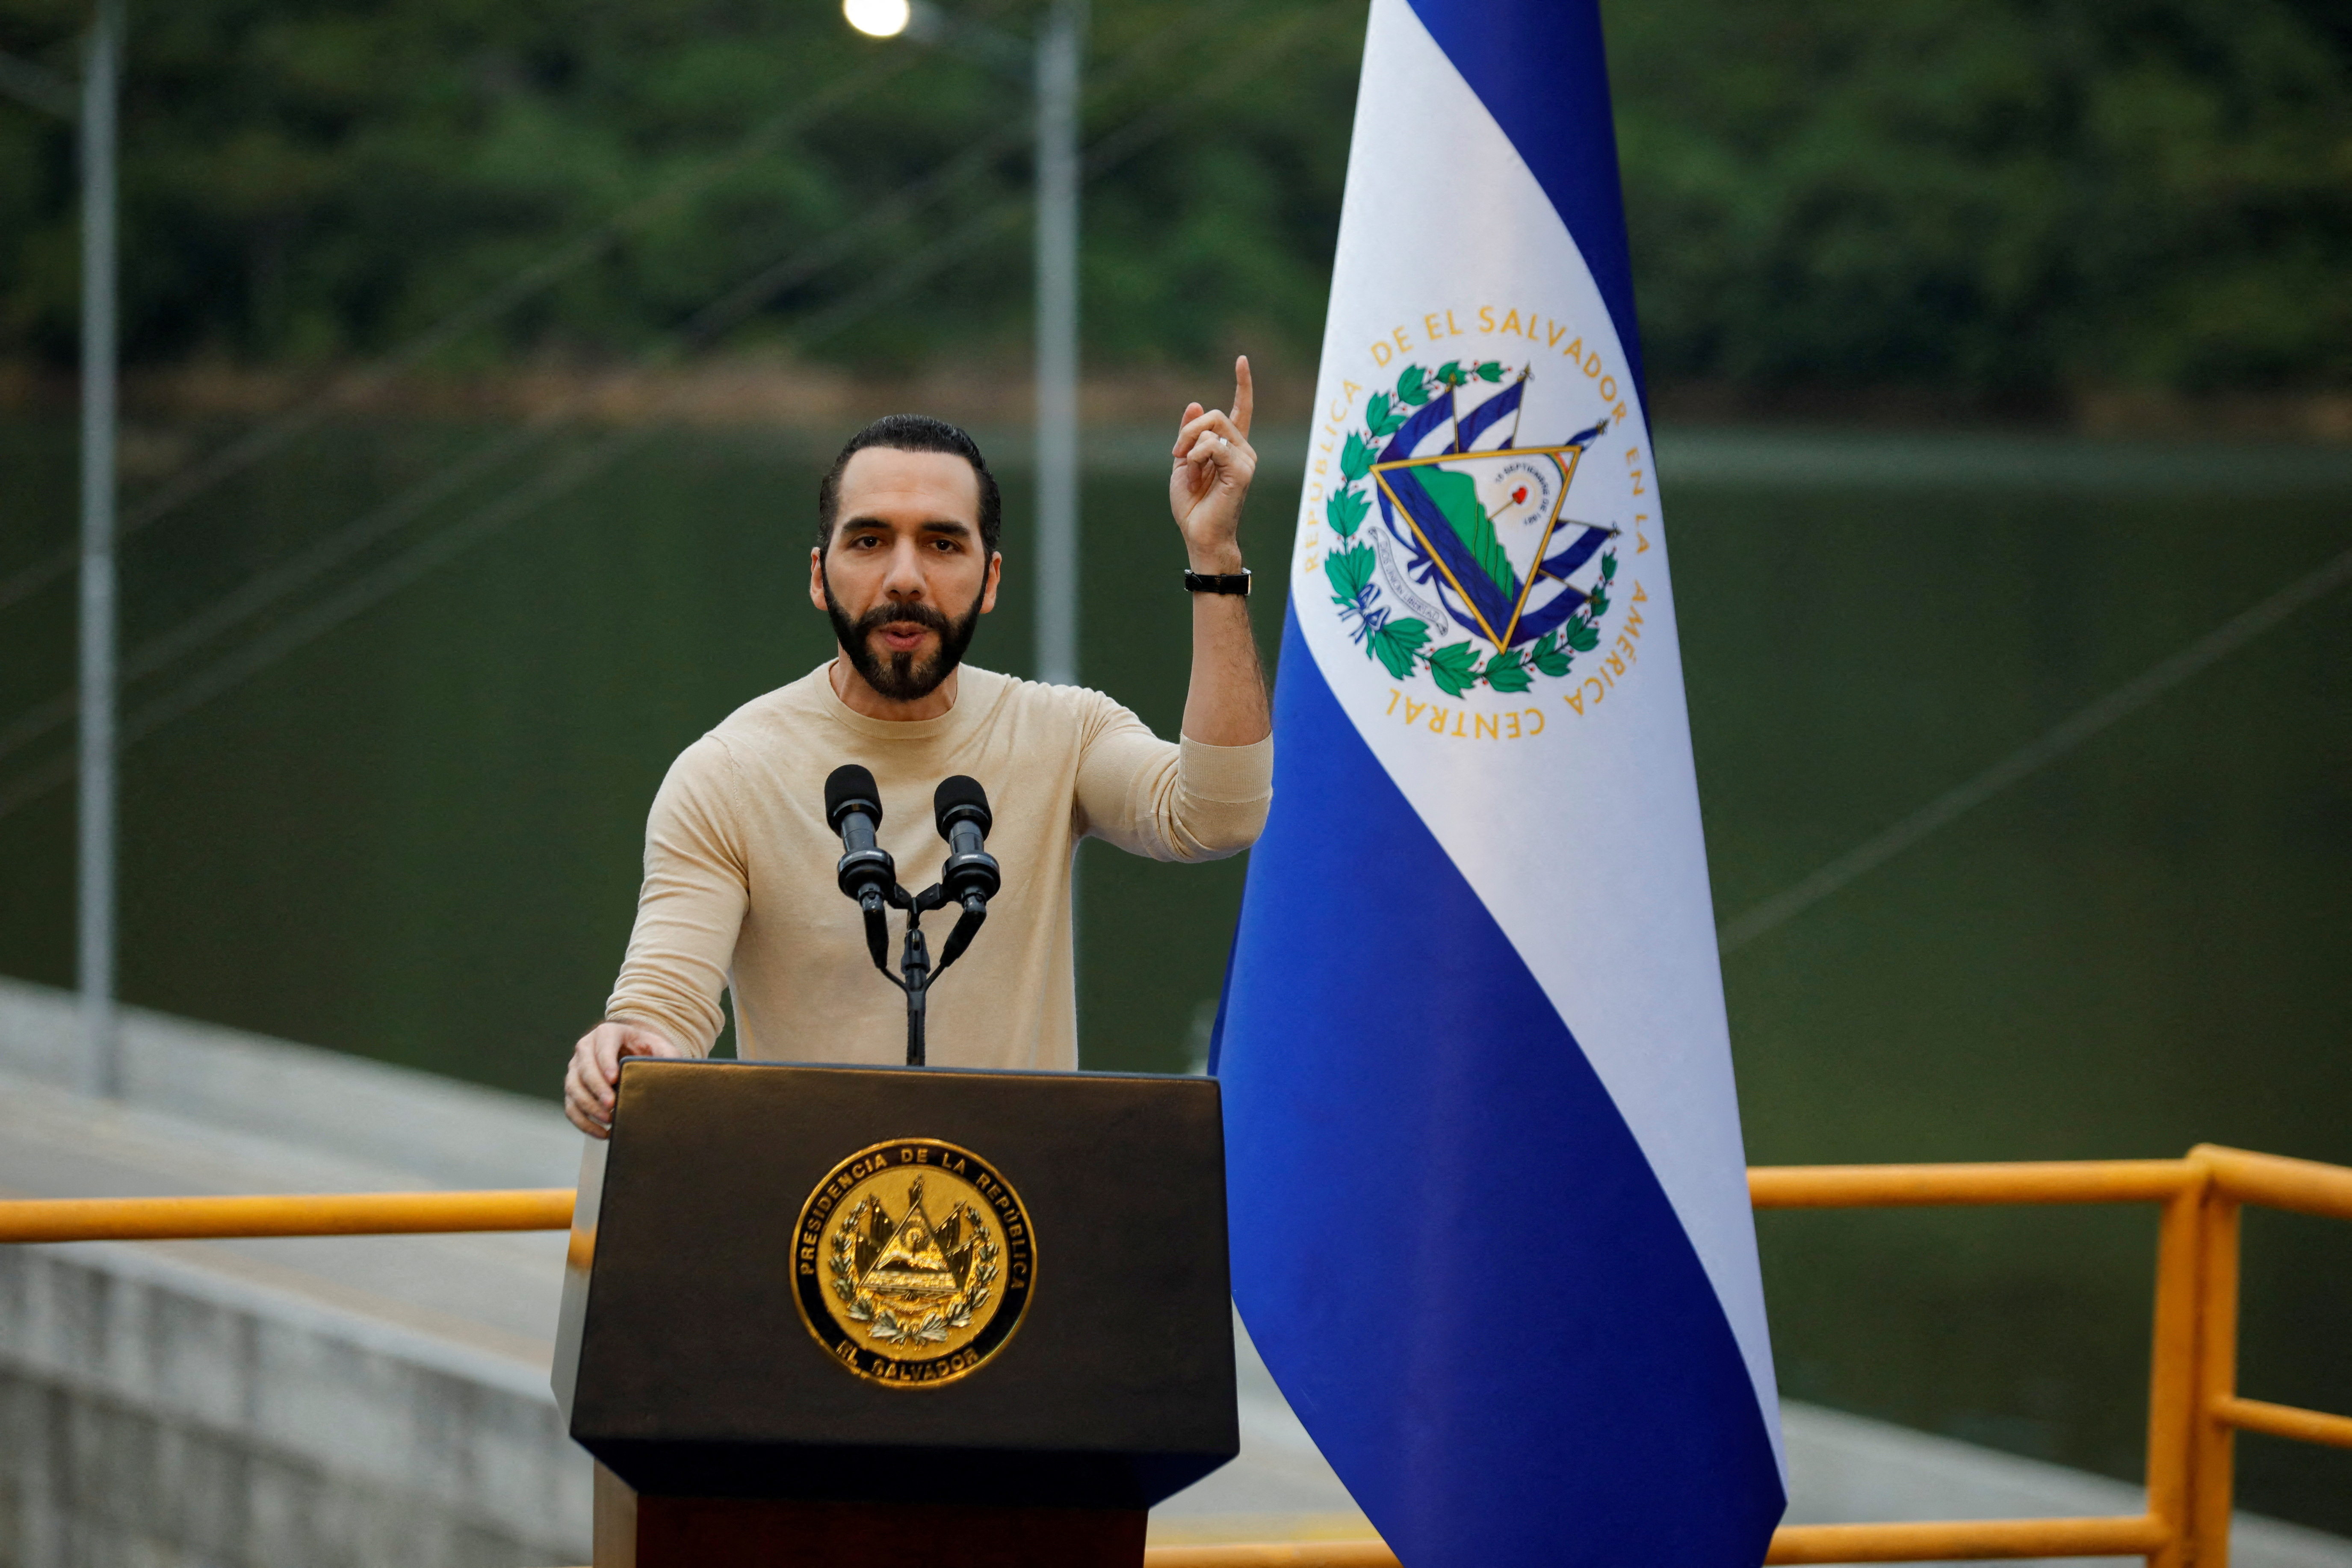 El Salvador's president asks for leave of absence to seek